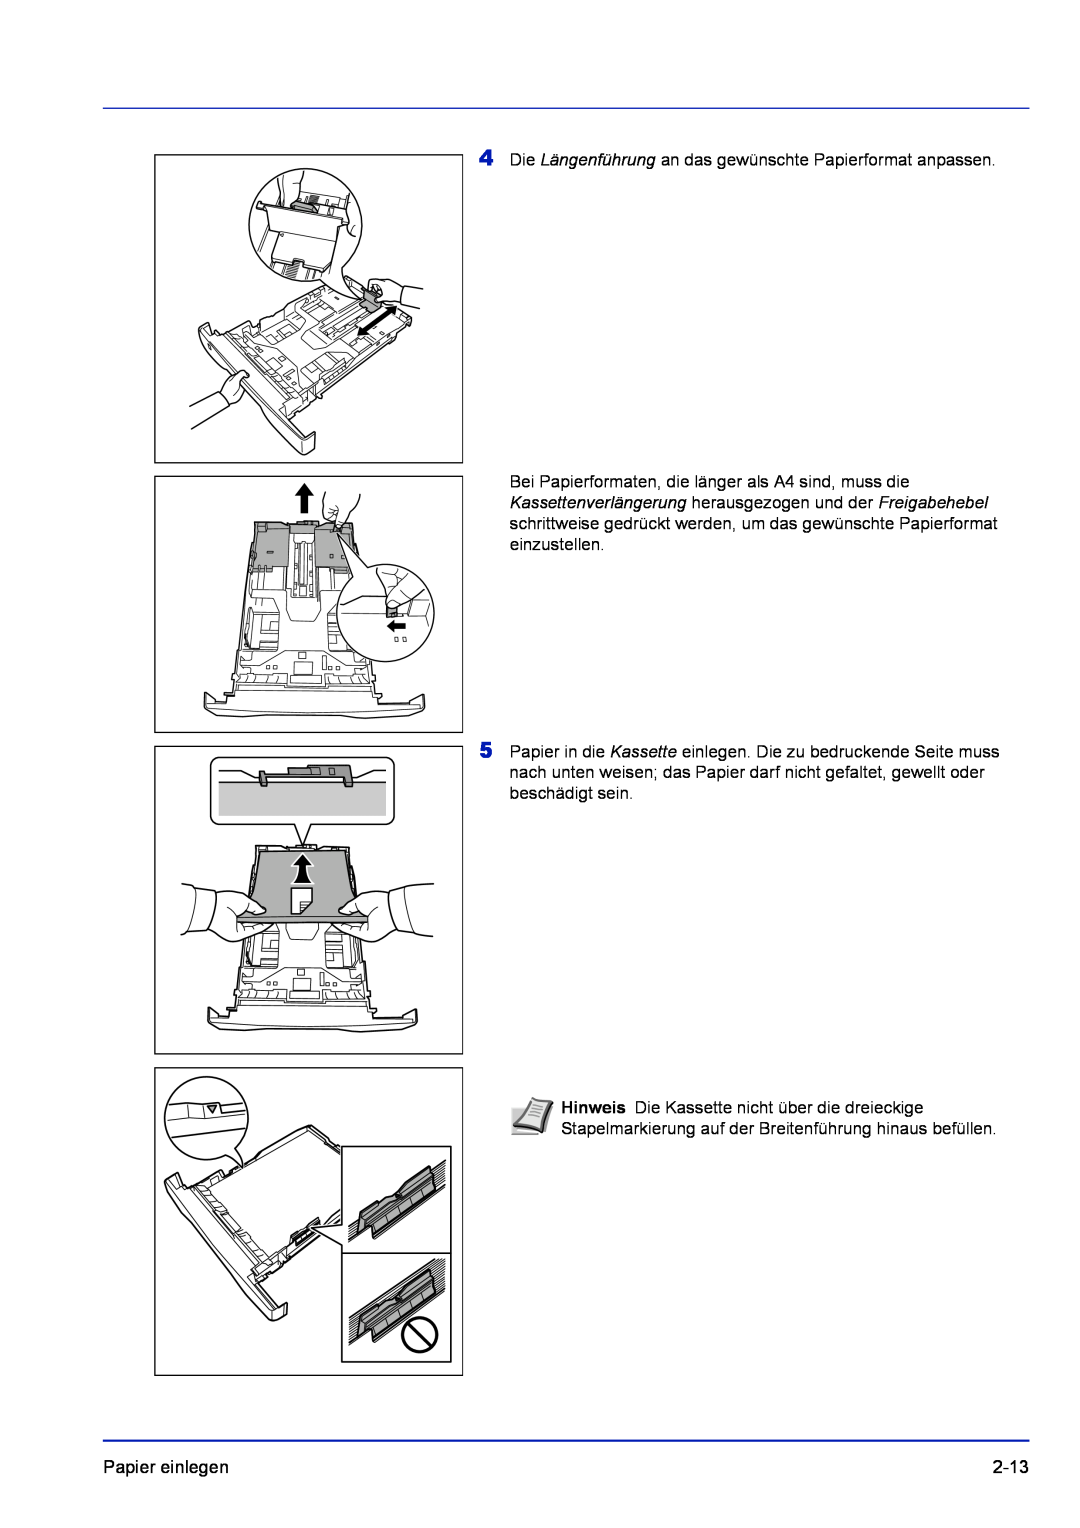 Kyocera FS-1320D, FS-1120D manual Die Längenführung an das gewünschte Papierformat anpassen, Papier einlegen, 2-13 